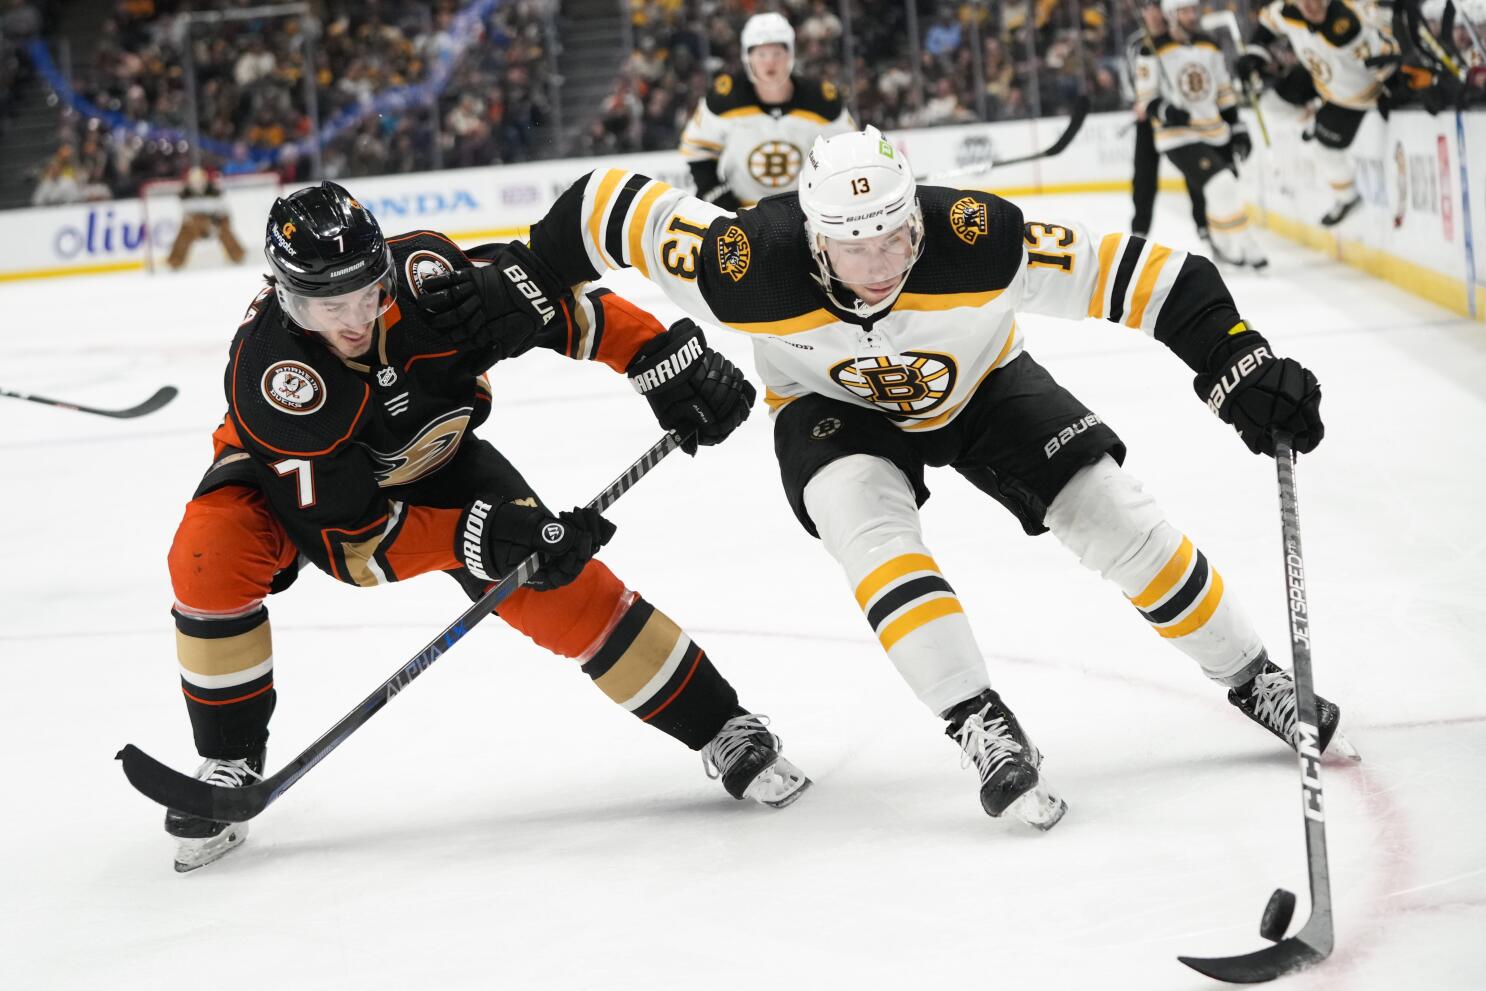 David Pastrnak scores again as unbeaten Bruins top Sharks